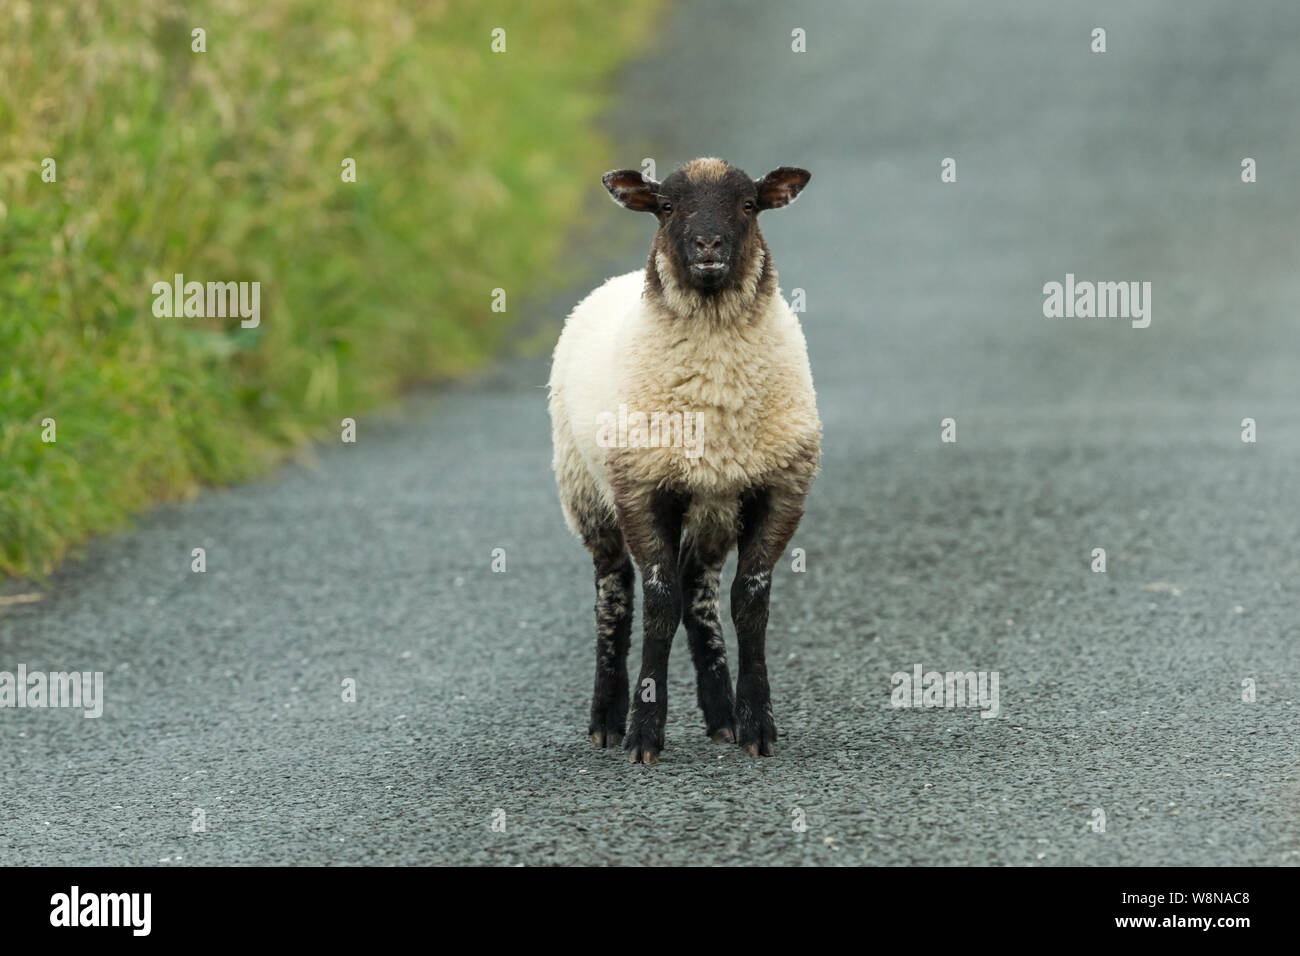 Swaledale bleating cordero, después de la separación de su madre y deambulan solos en una carretera. Swaledale ovejas son nativas de North Yorkshire, Inglaterra, Reino Unido. Foto de stock